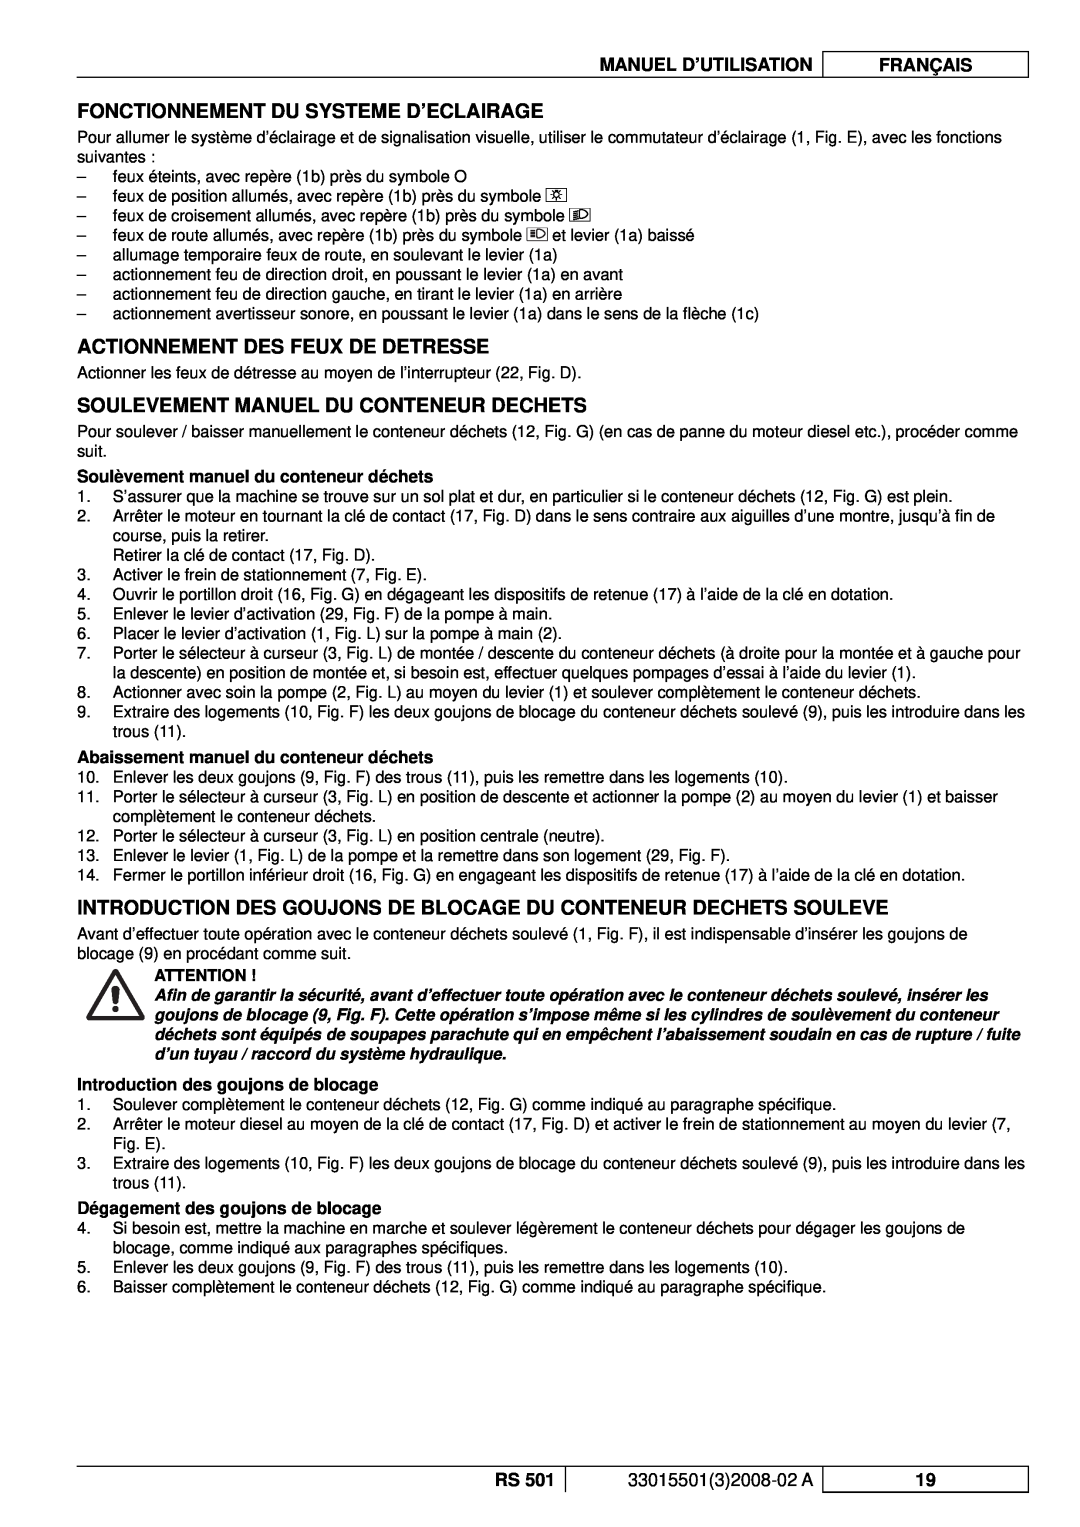 Nilfisk-ALTO RS 501 Fonctionnement Du Systeme D’Eclairage, Actionnement Des Feux De Detresse, Manuel D’Utilisation 